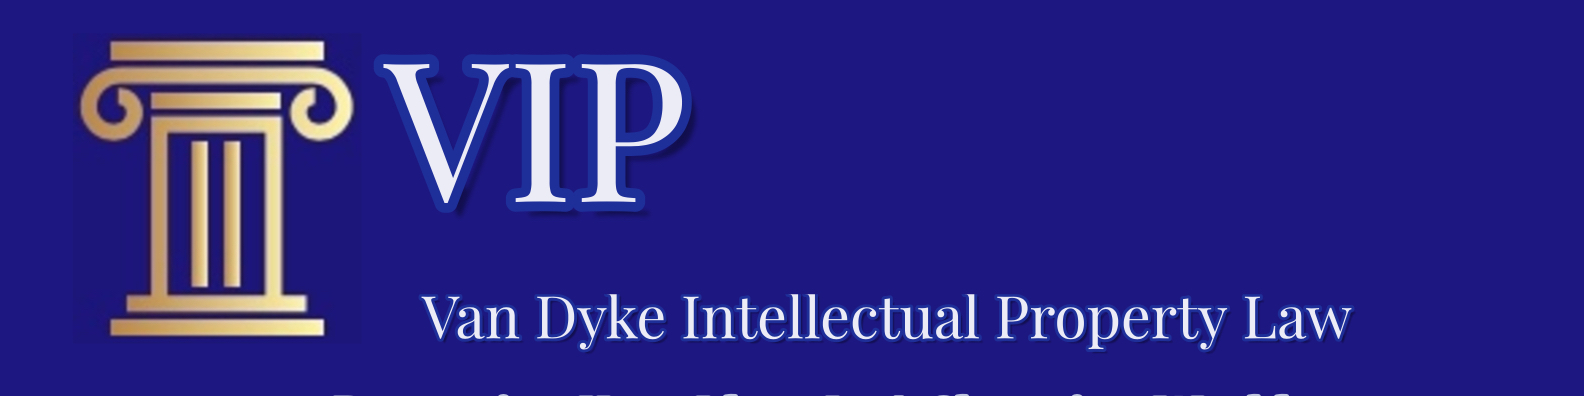 Van Dyke Intellectual Property Law